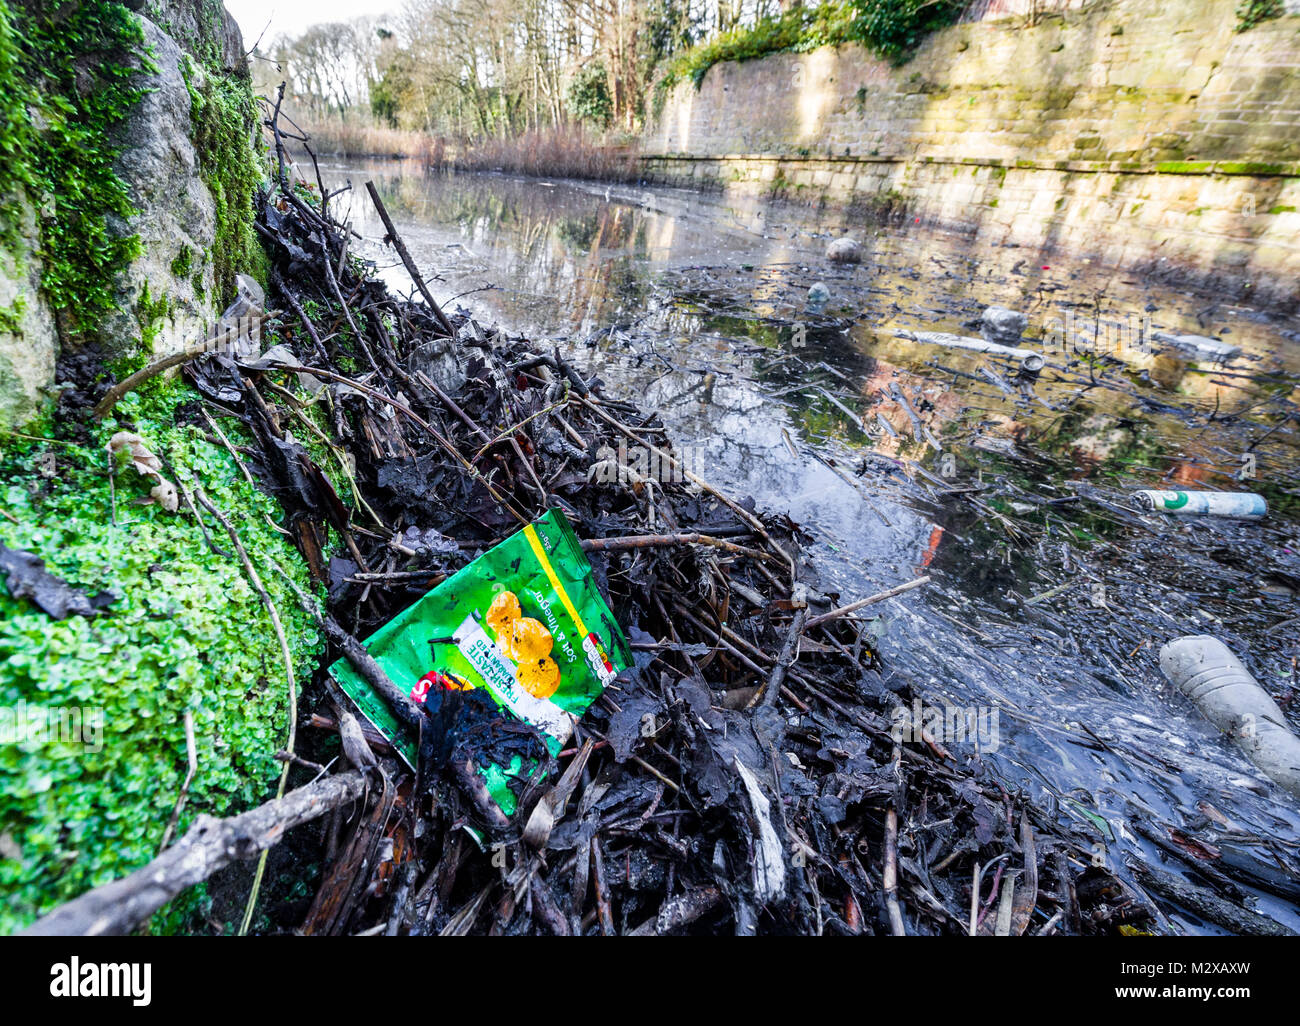 Vacíe la bolsa nítidos, botellas plásticas y latas de bebida en un lago en una reserva natural. Foto de stock